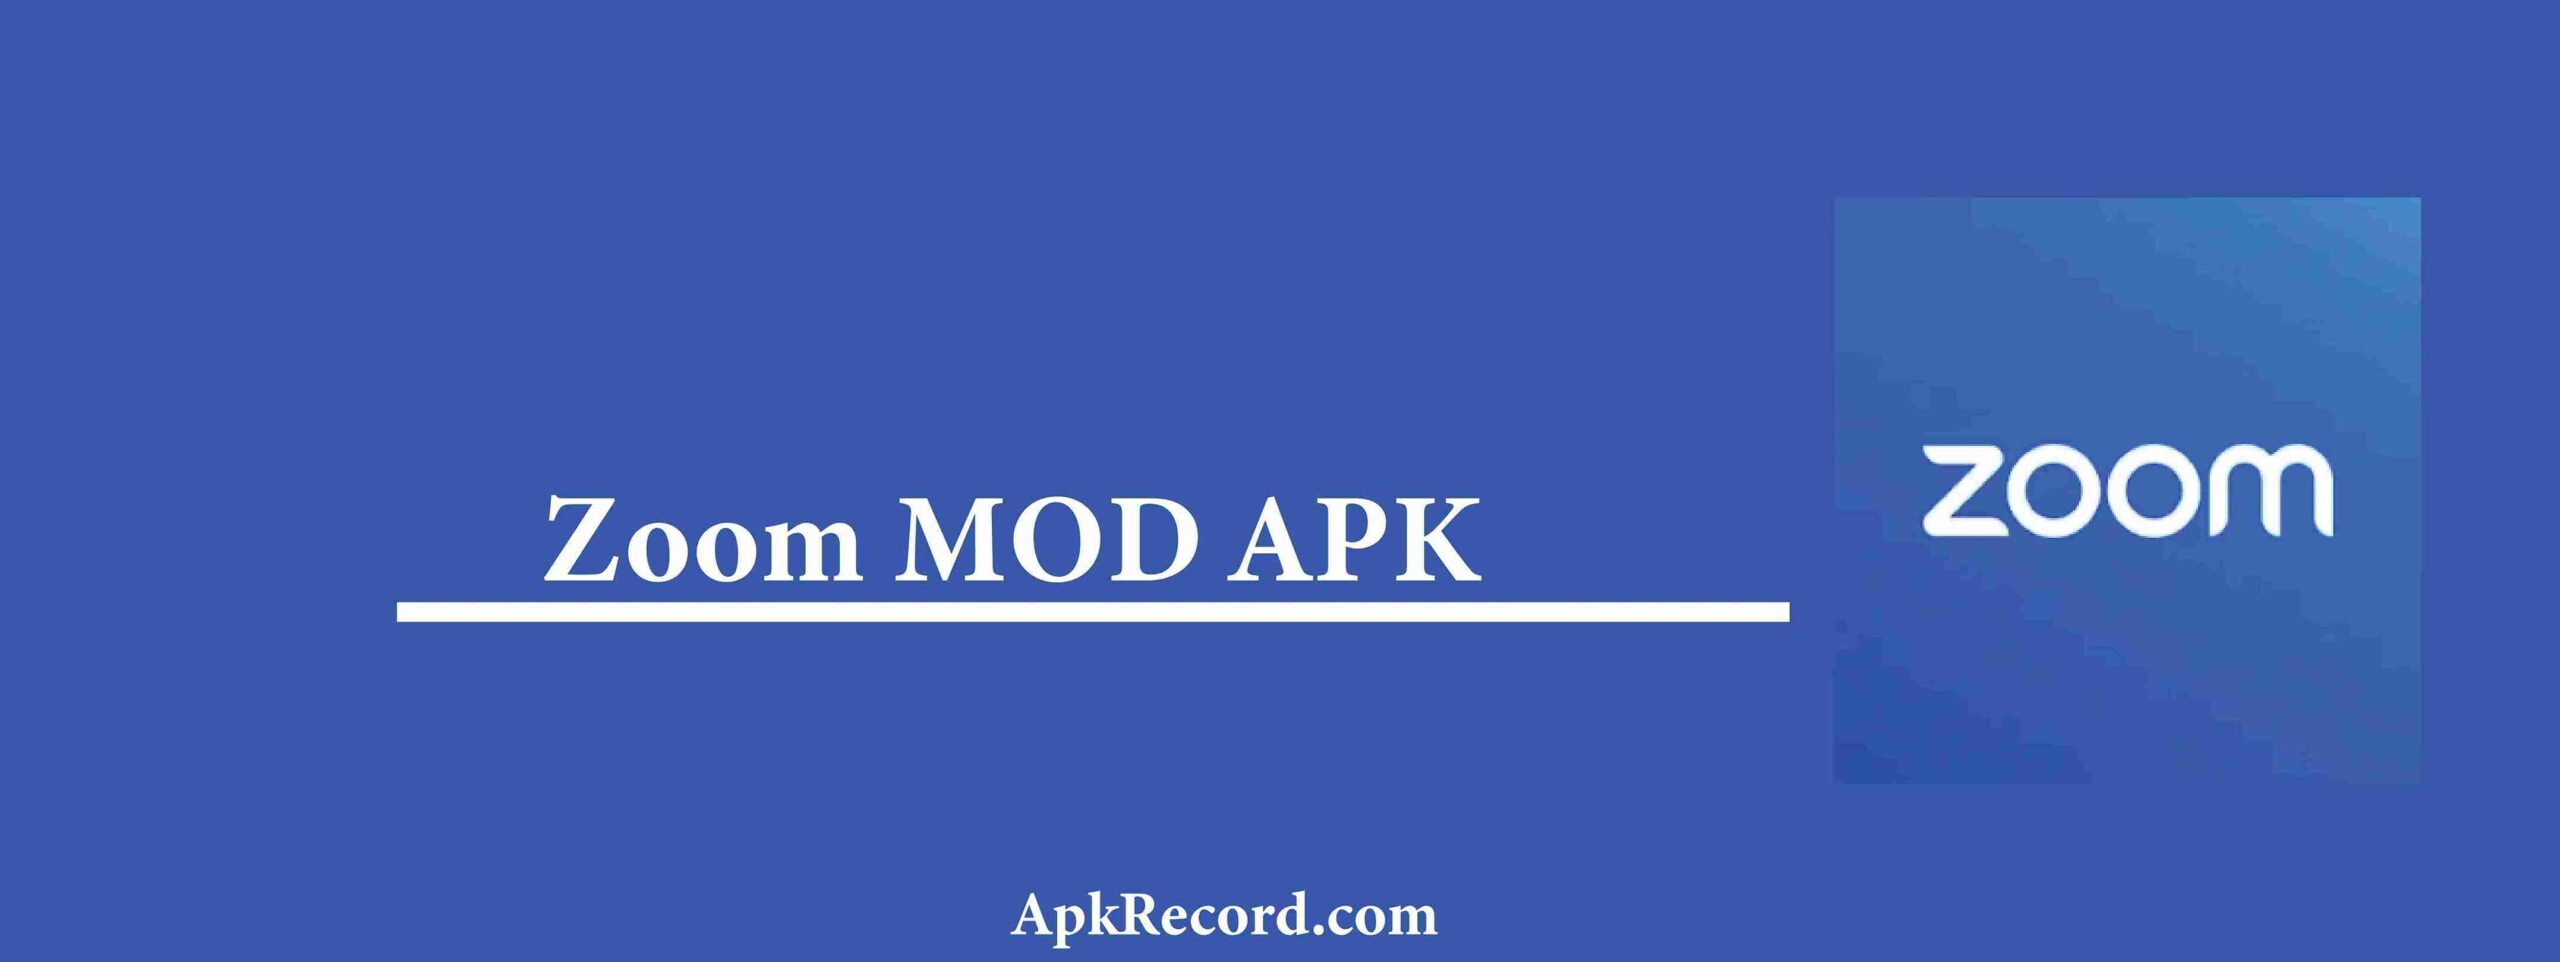 Zoom MOD APK V5.17.0.18287